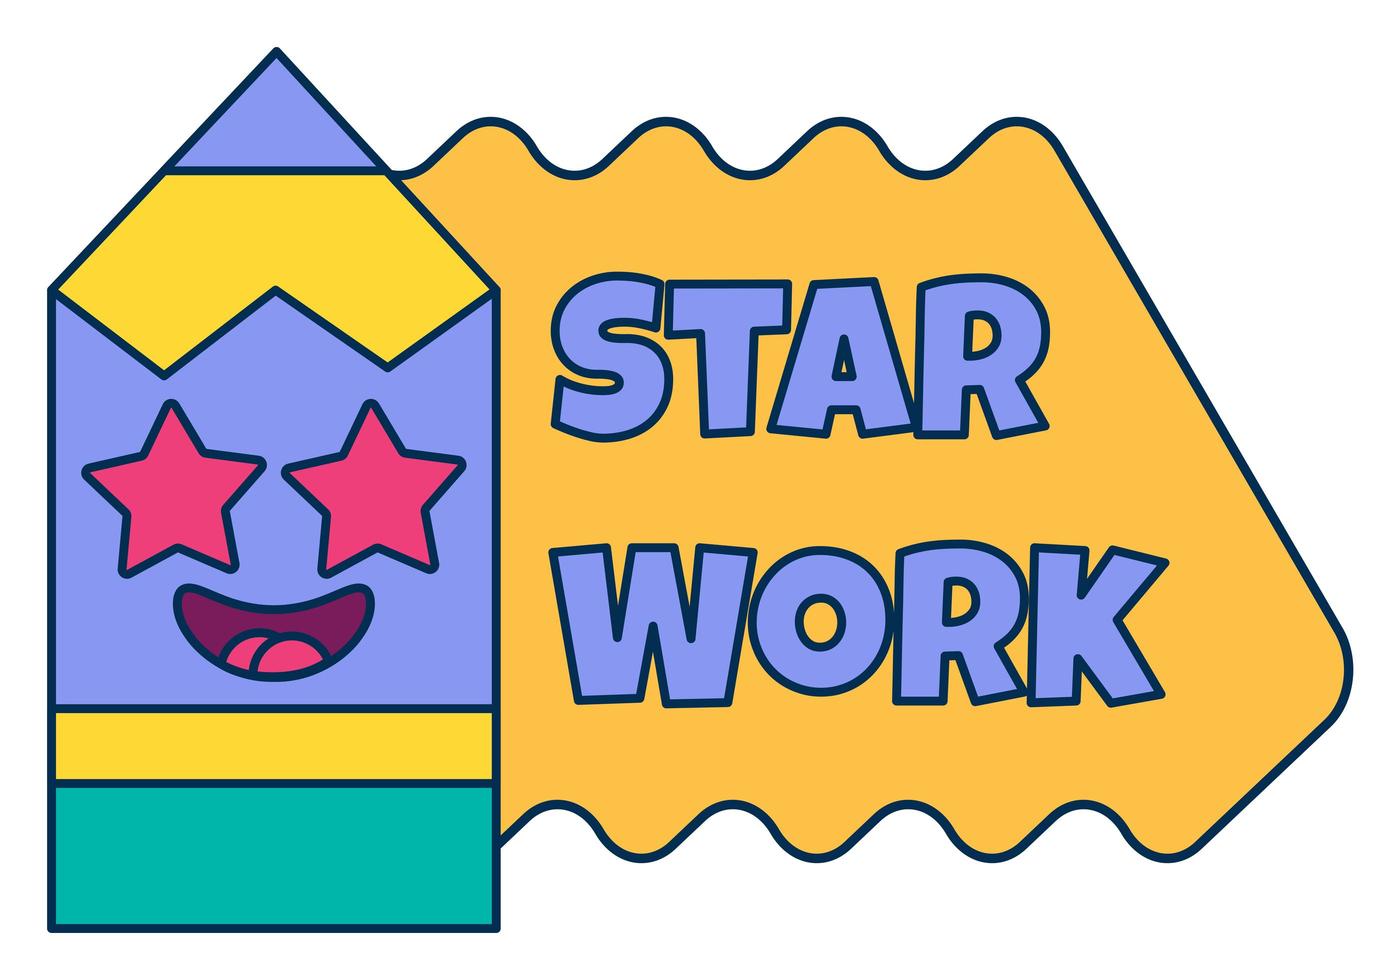 Star work teacher reward sticker, school award vector